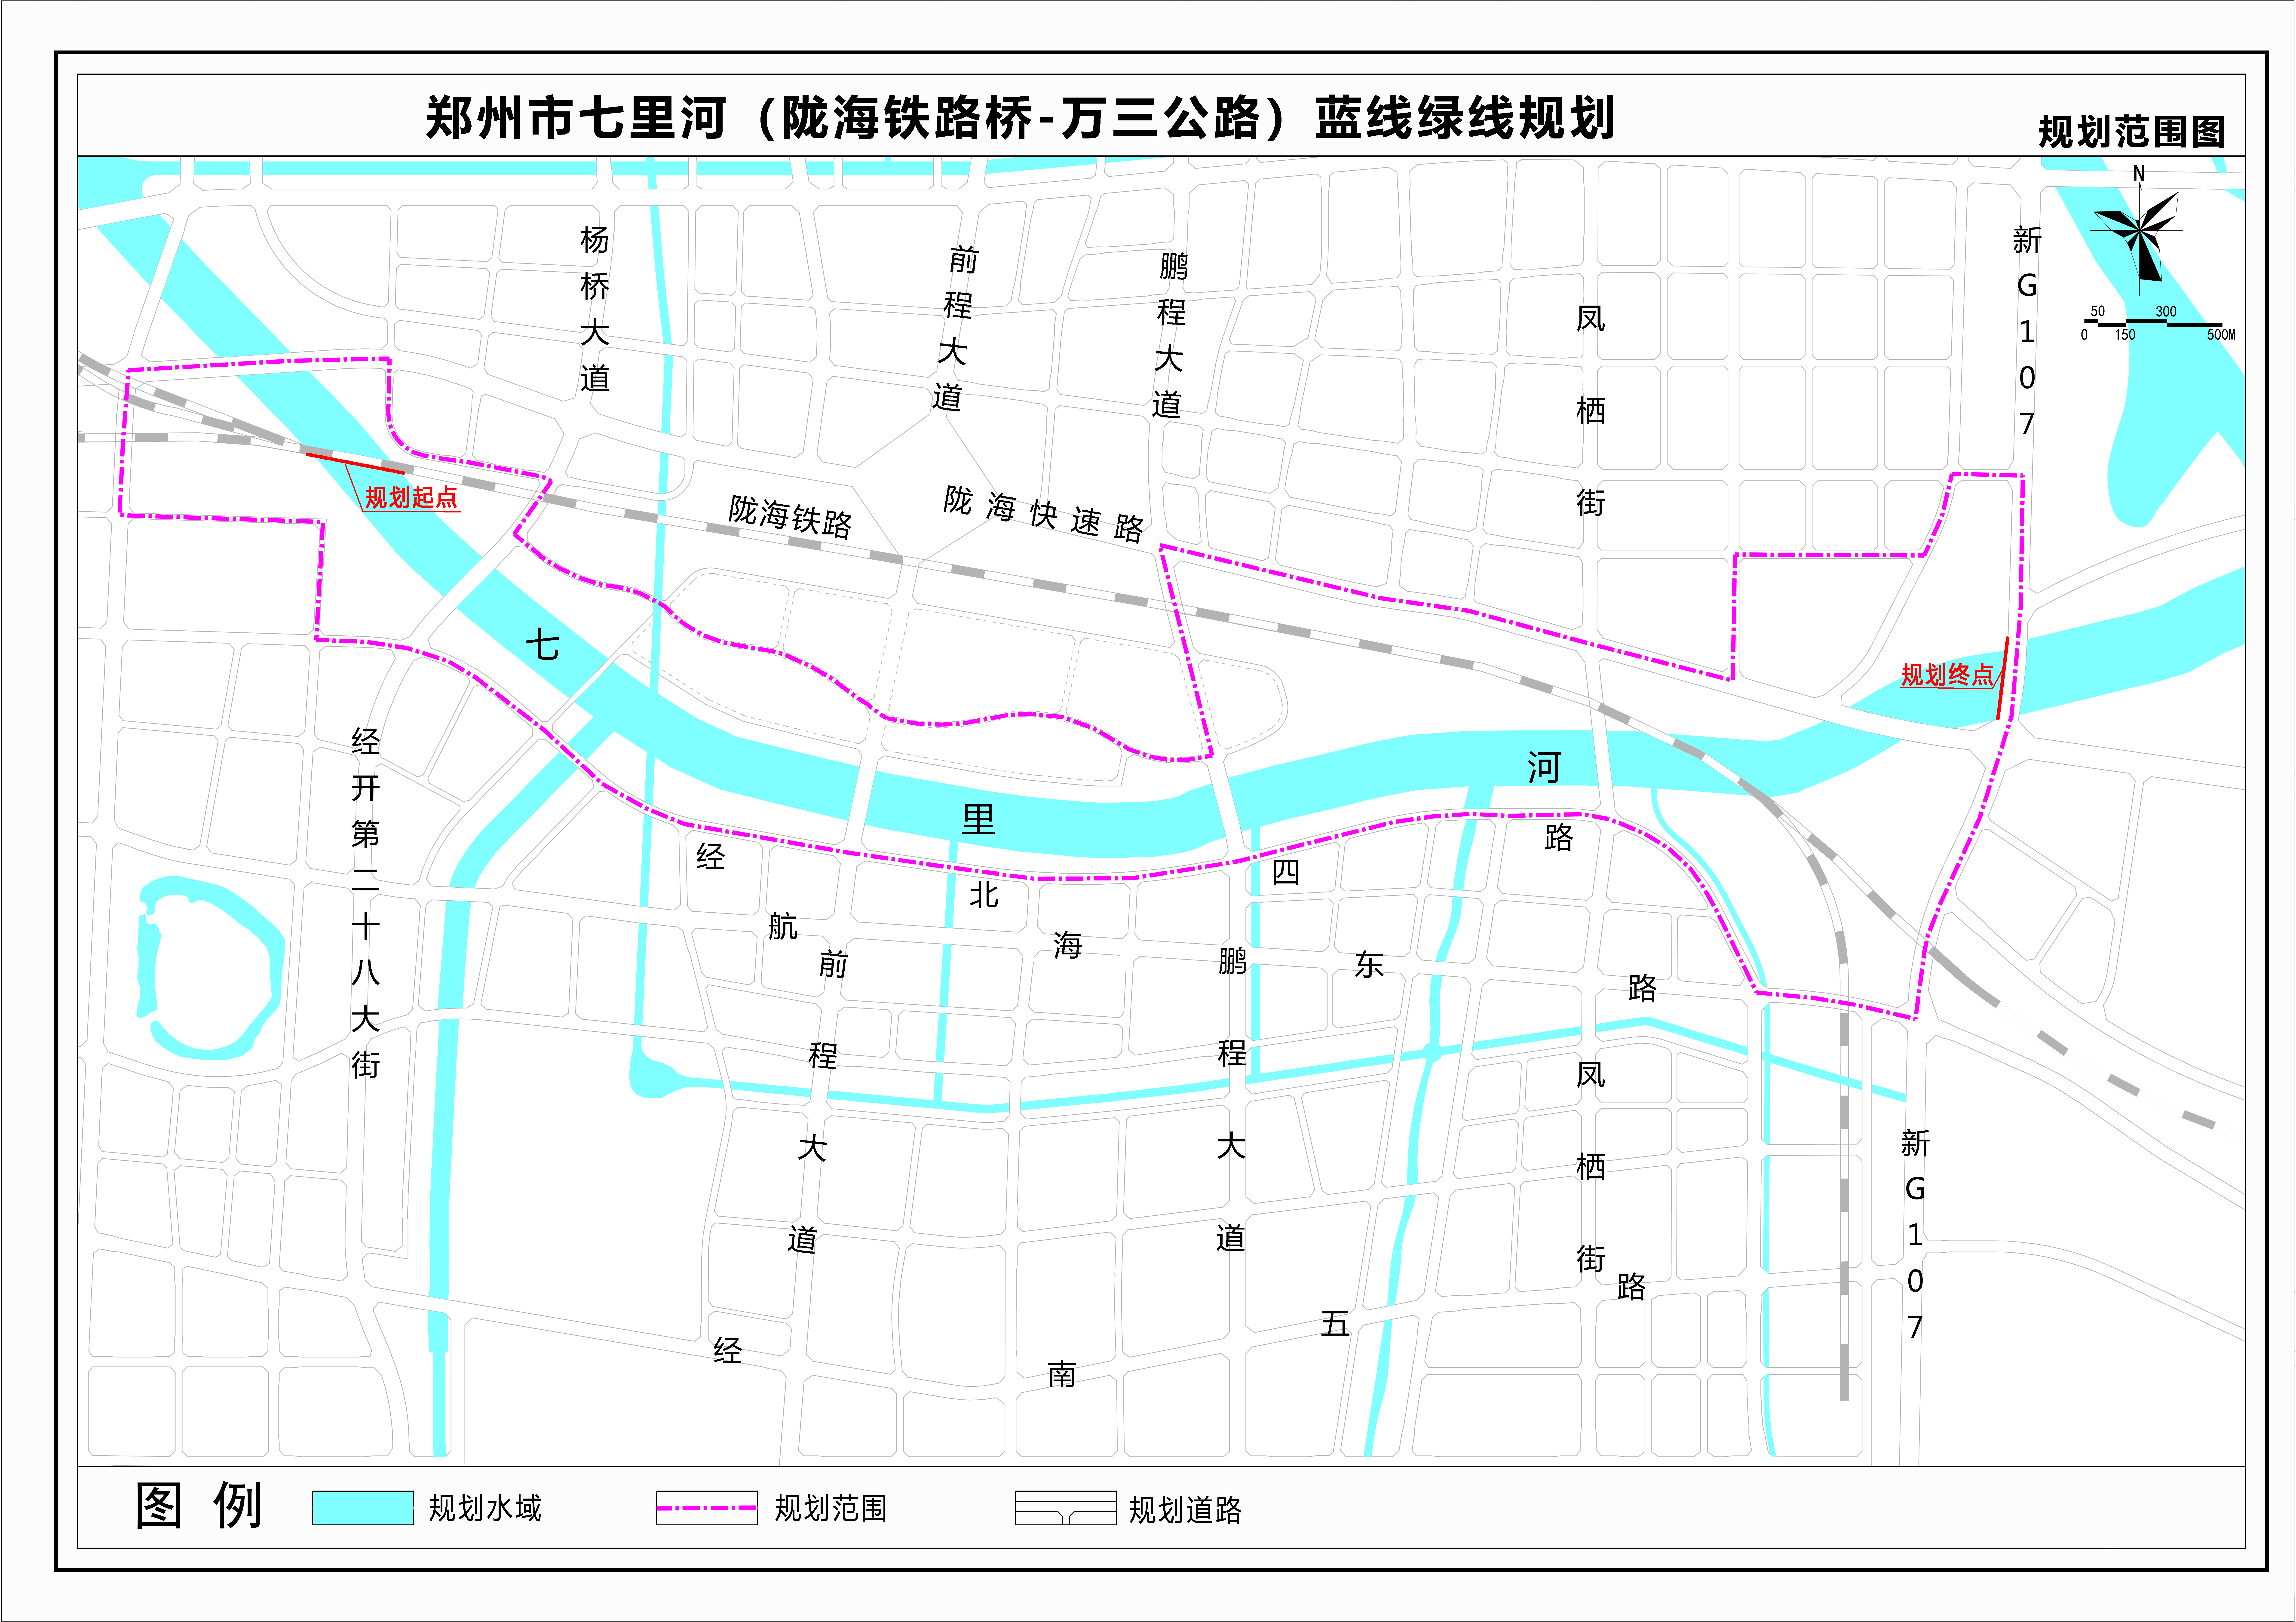 郑州市七里河(陇海铁路桥—万三公路) 蓝线绿线规划